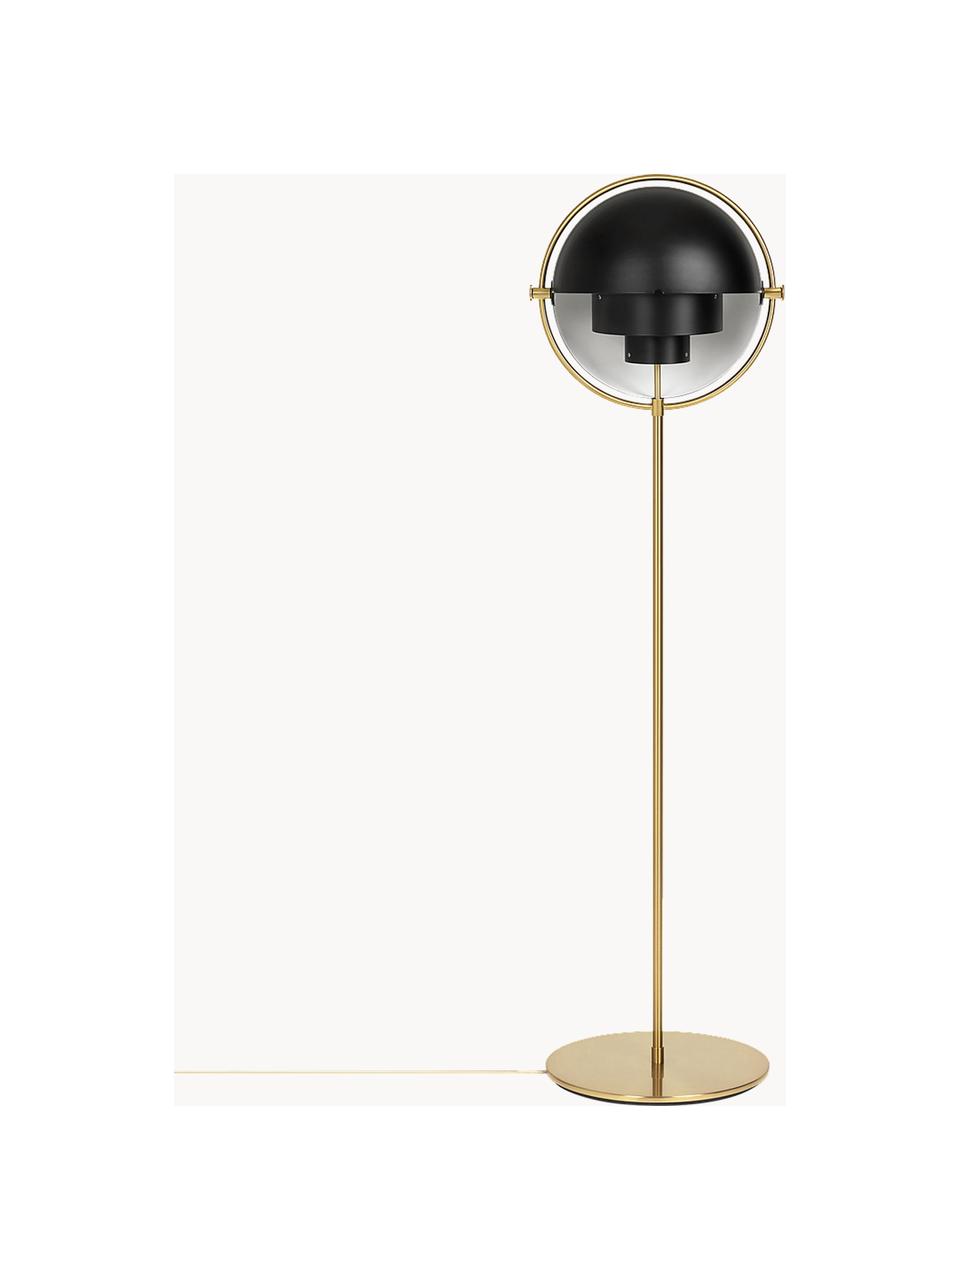 Verstellbare Stehlampe Multi-Lite, Schwarz matt, Goldfarben glänzend, H 148 cm